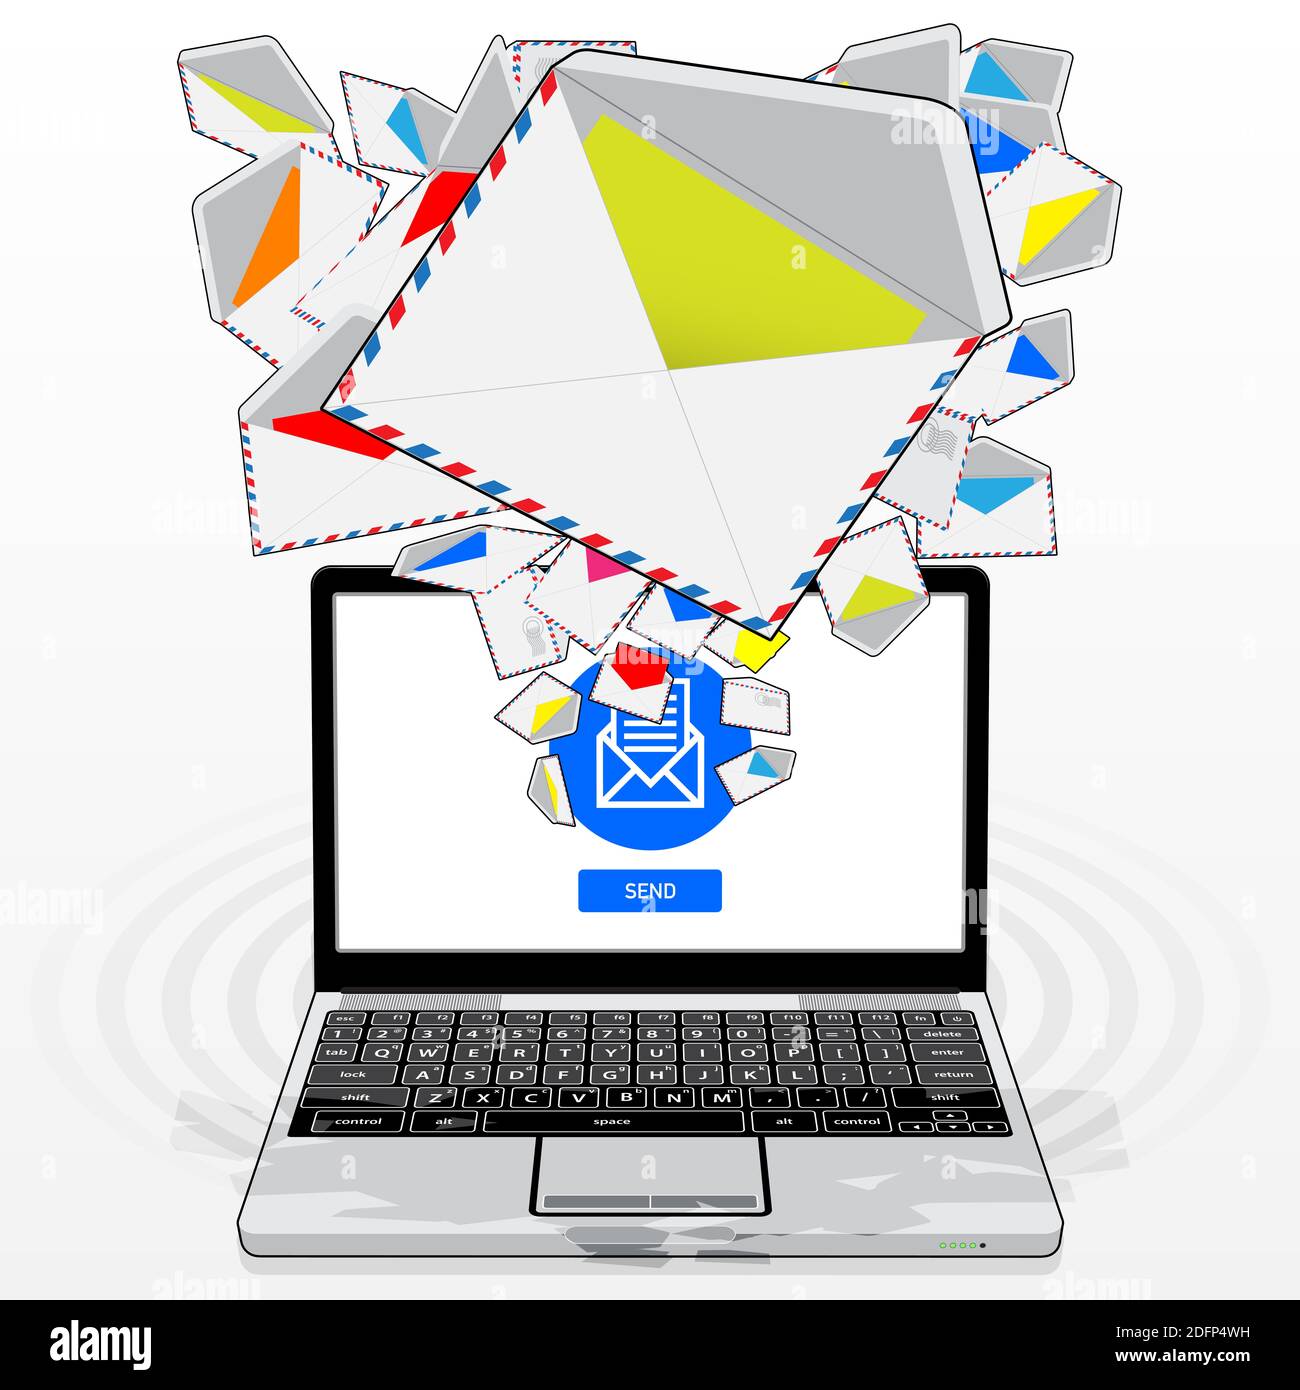 Ein Laptop-Computer, der elektronische Post sendet und empfängt. Abgebildet ist ein zufälliger E-Mail-Stream, der von seinem Bildschirm aus per Zufallsprinzip emittiert/gestreamt wird. Stockfoto